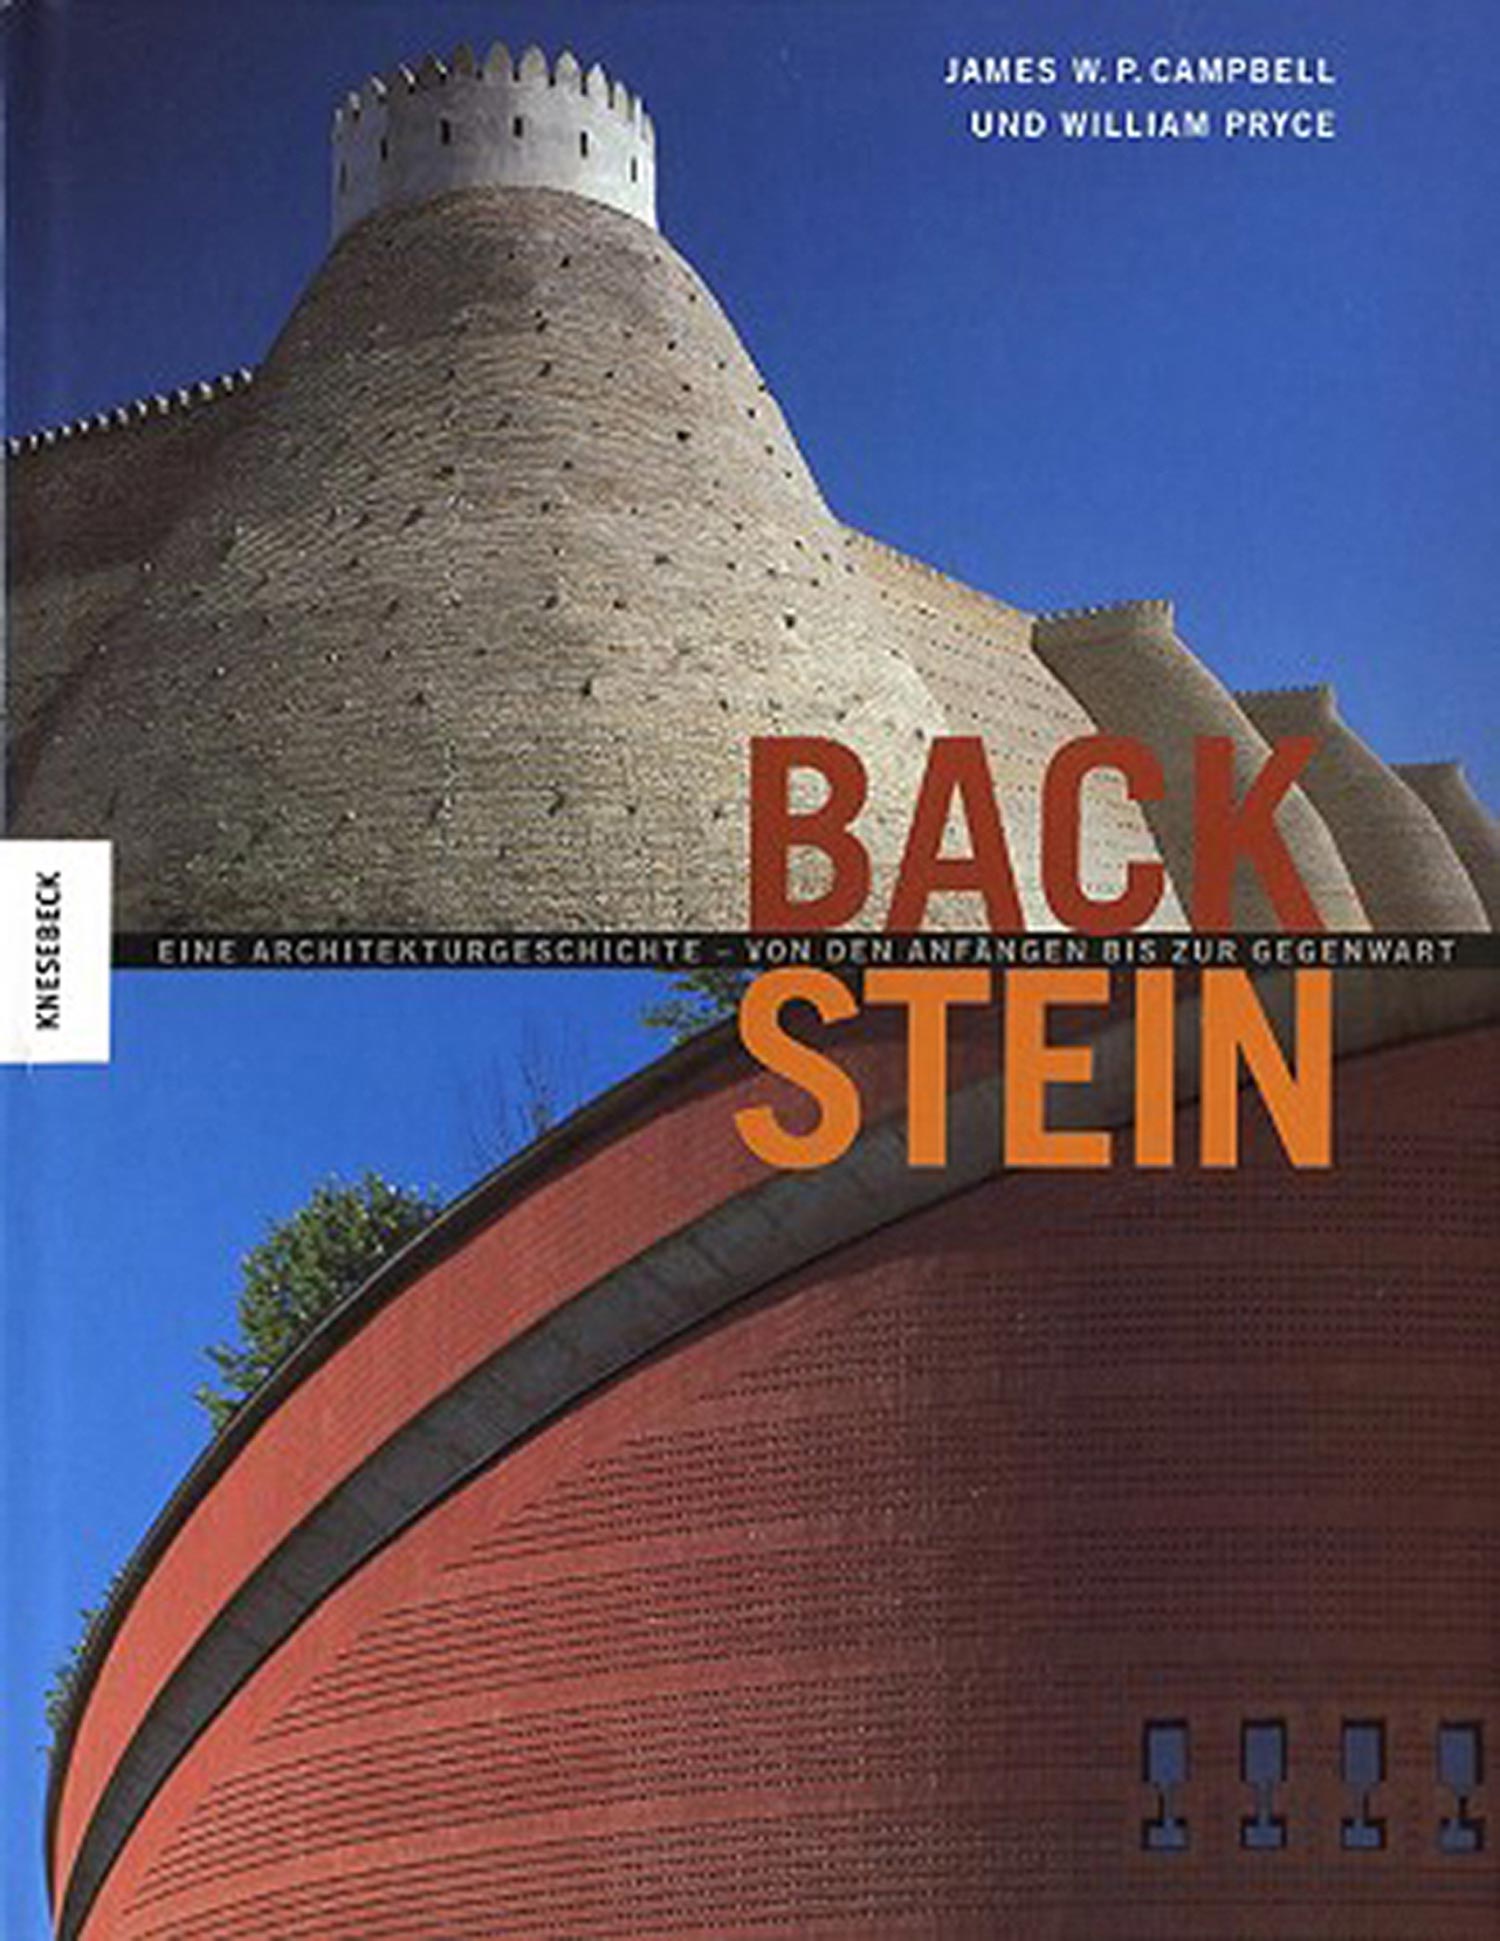 Backstein. Eine Architekturgeschichte